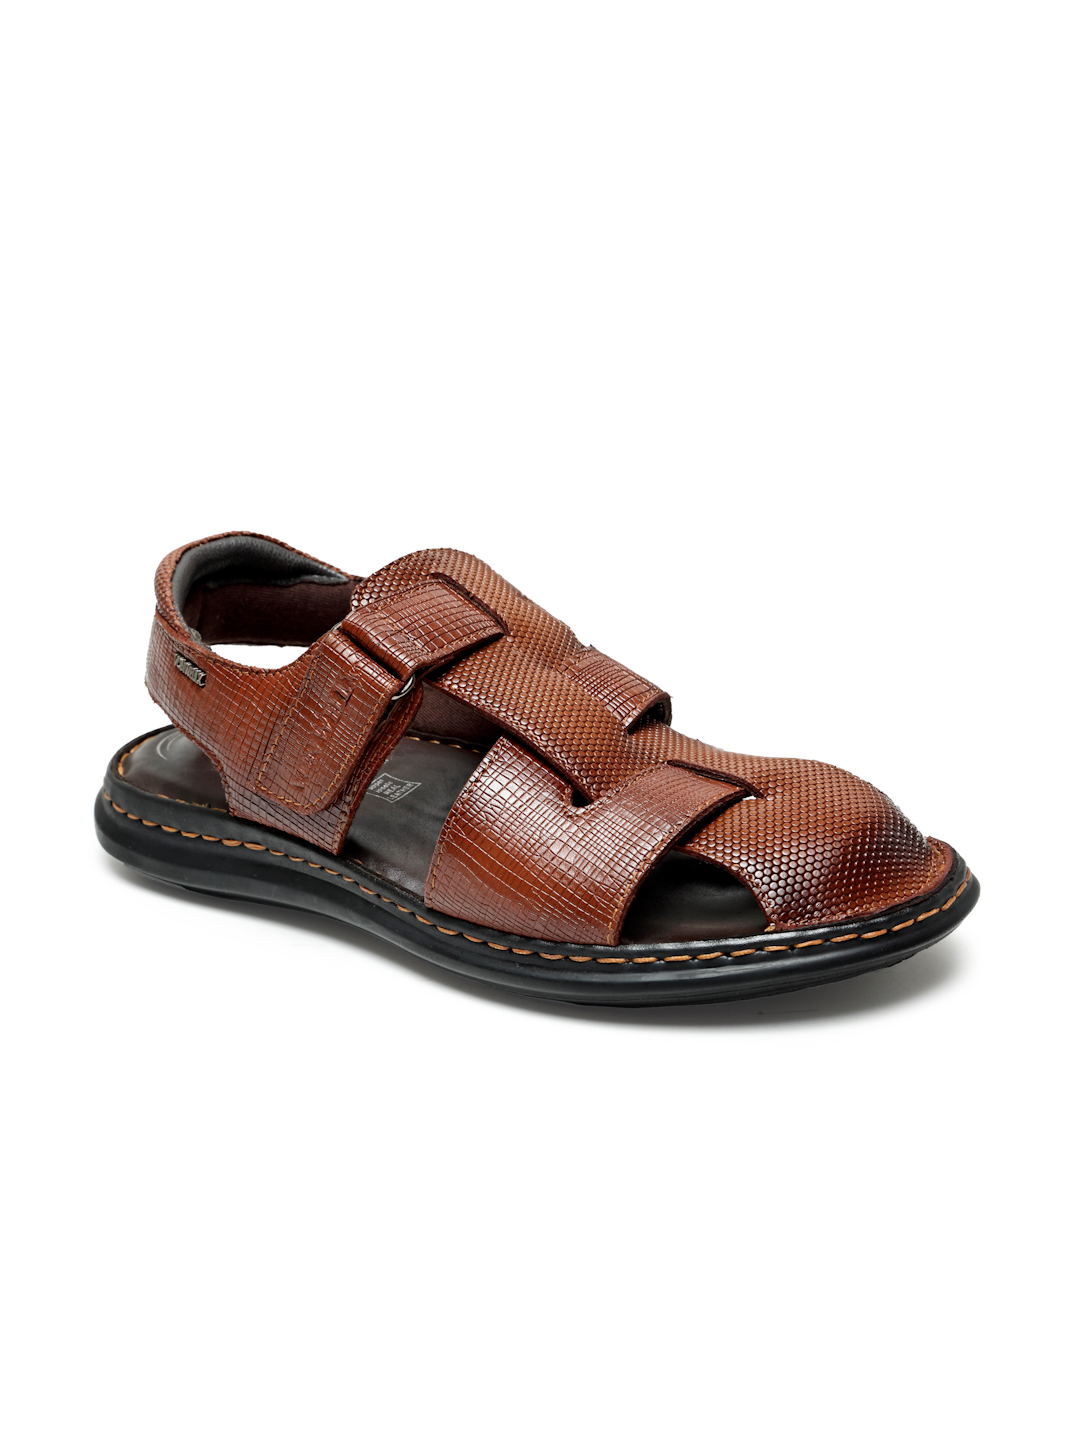 Buy Von Wellx Germany Comfort Men's Tan Sandals Morgen Online in West Bengal